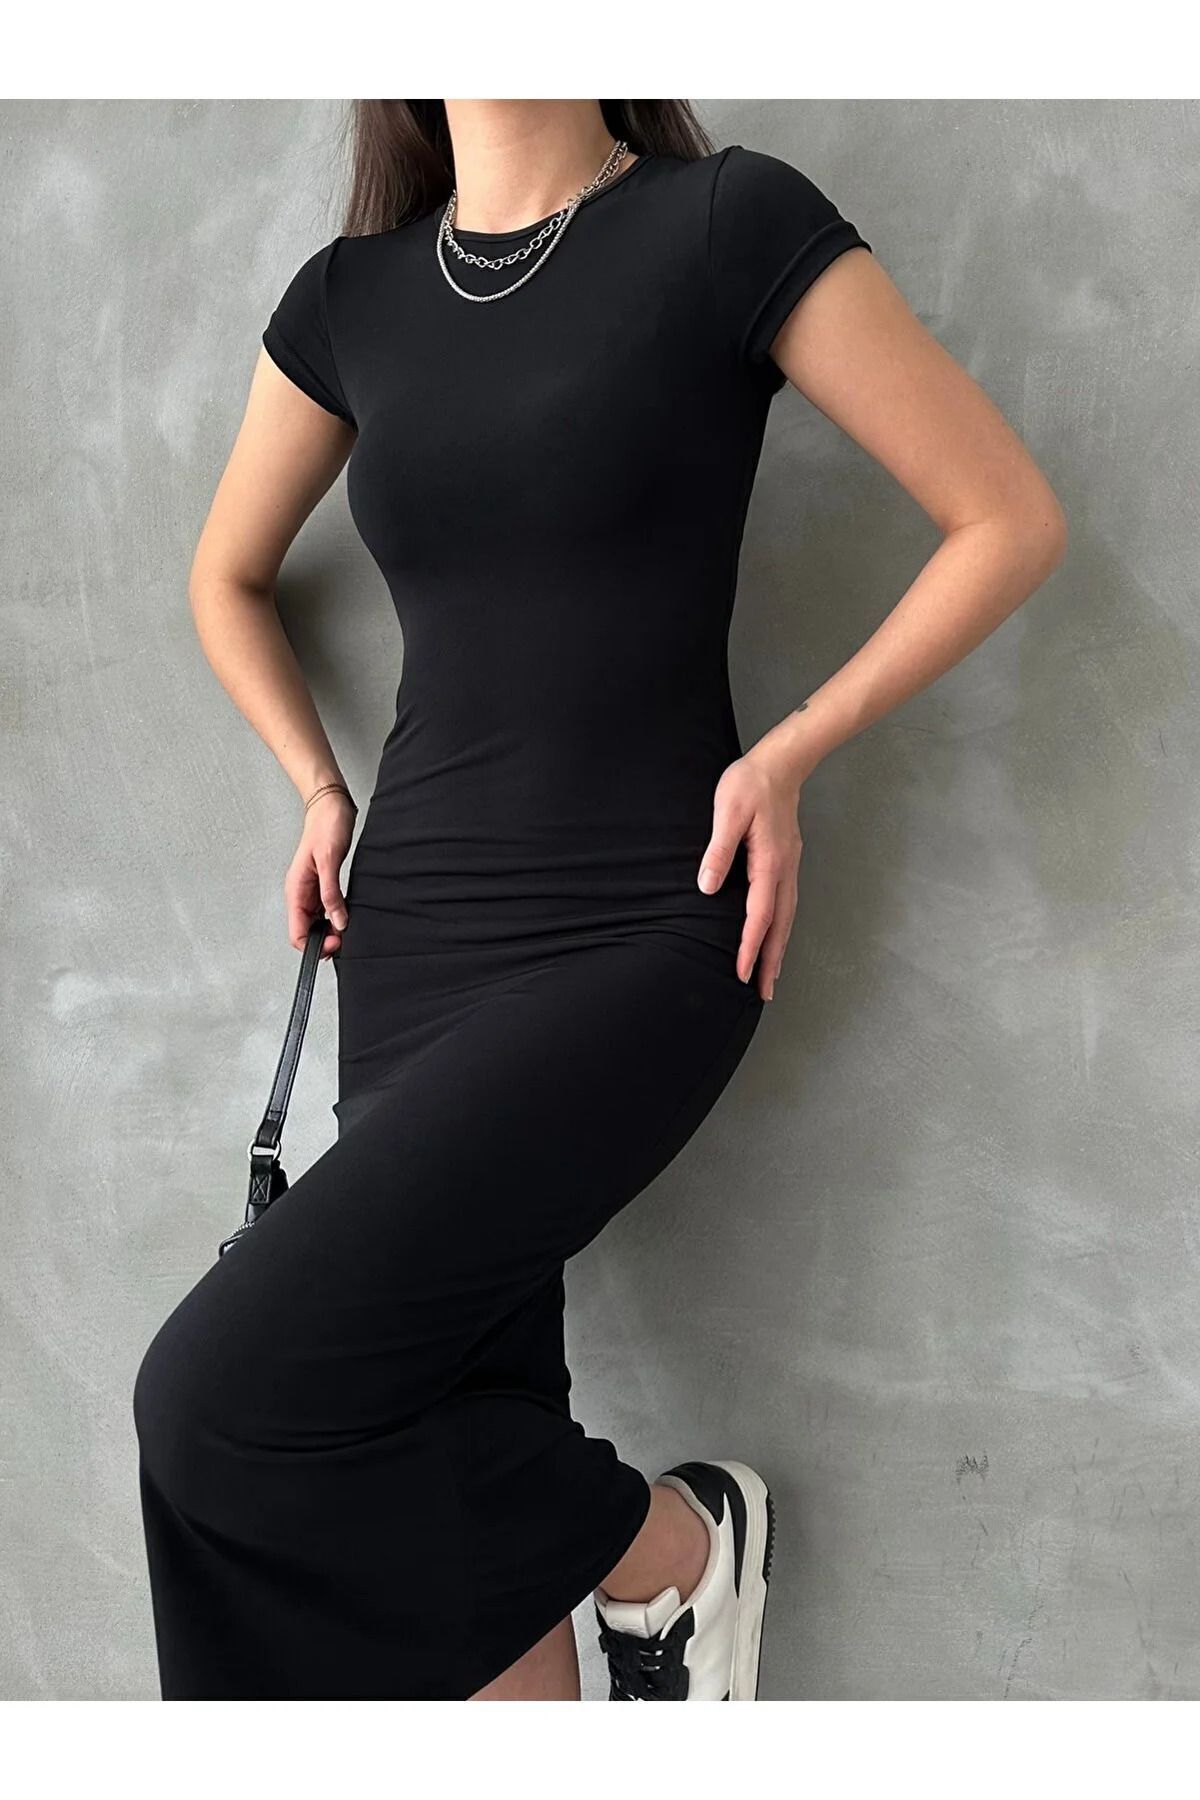 Cistern İstanbul Kadın Siyah Bisiklet Yaka Kısa Kollu Maxi Yazlık Elbise